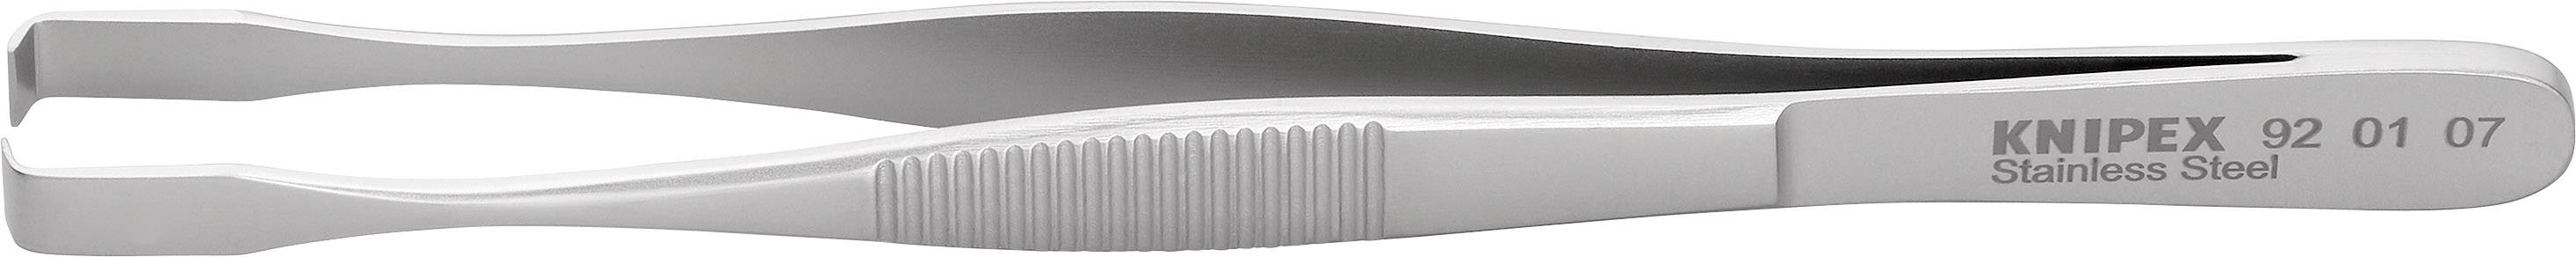 KNIPEX 92 01 07 Positionierpinzette 1 Stück Stumpf 145 mm